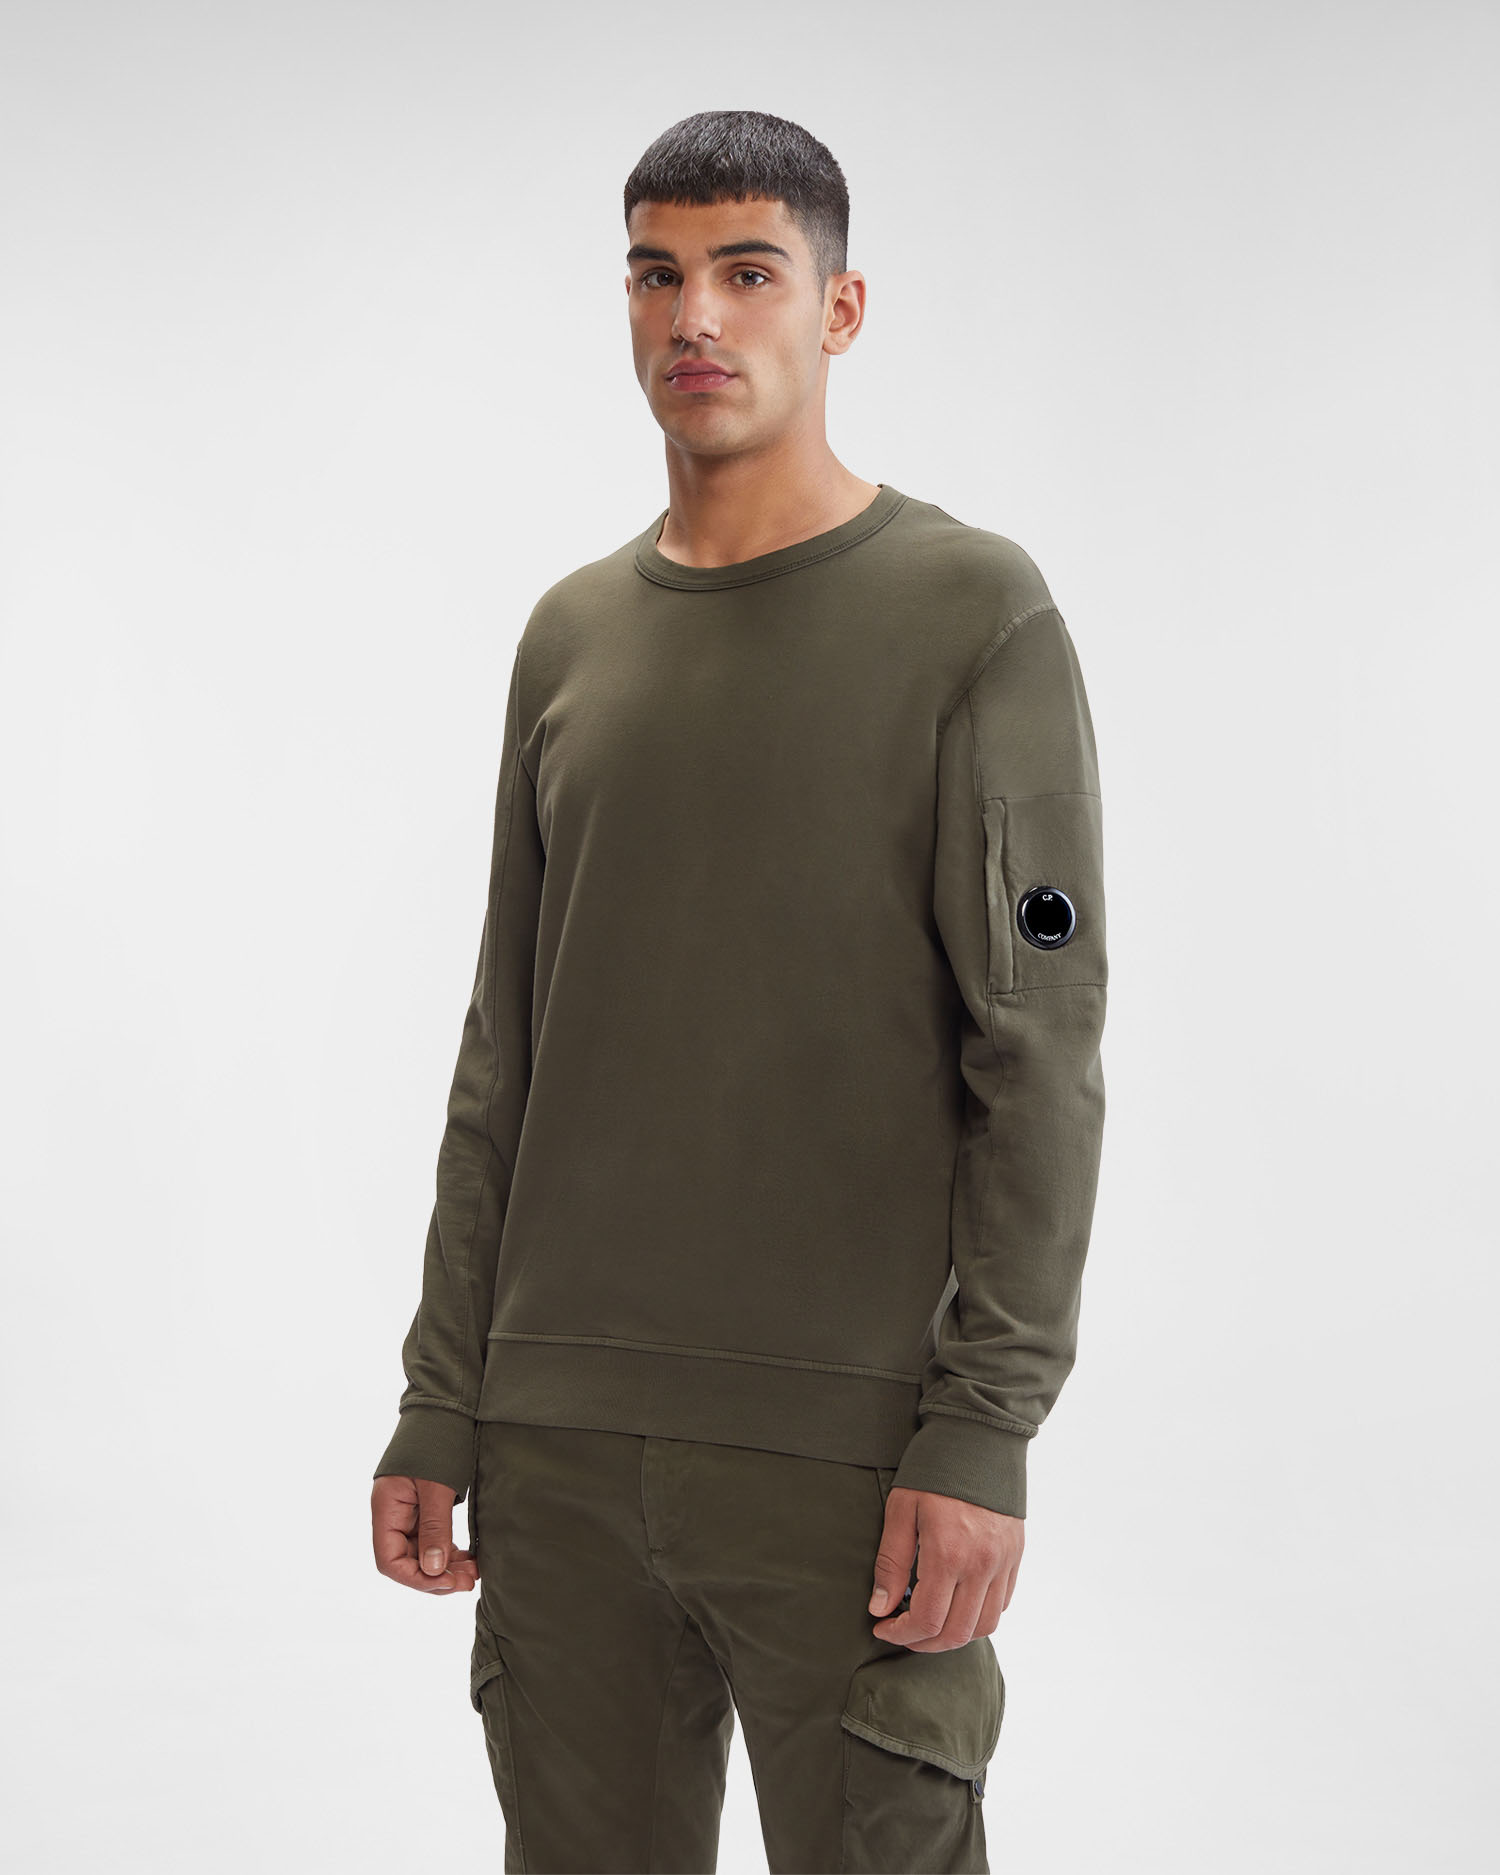 Light Fleece Sweatshirt | C.P. Company Online Store